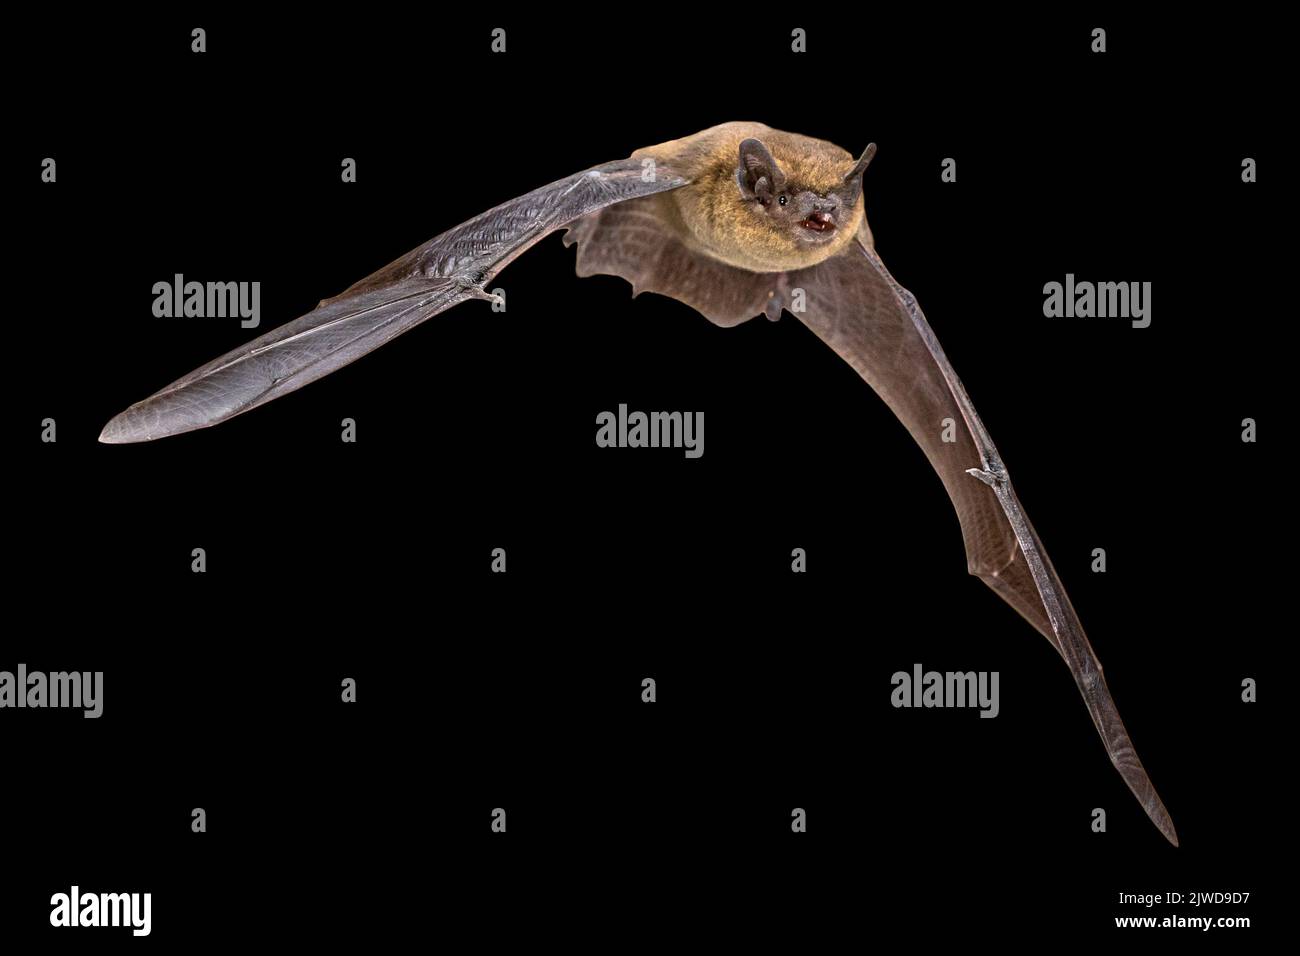 Flying Pipistrelle bat (Pipistrellus pipistrellus) photo d'action de l'animal de chasse isolé sur fond noir. Cette espèce est connue pour se percher et l Banque D'Images